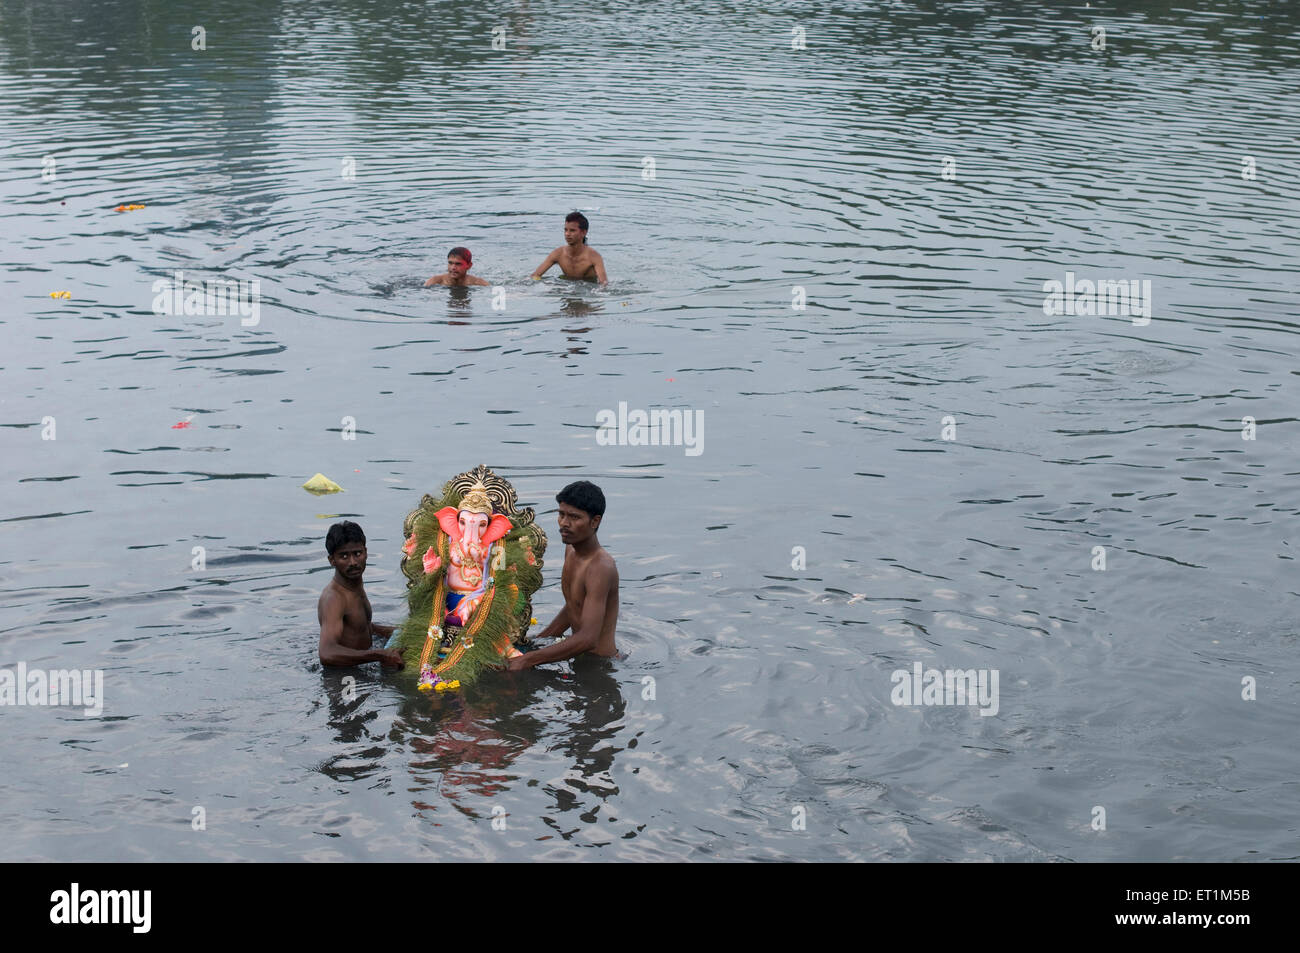 Une petite idole de Seigneur Ganesh prises par deux menfor immersion dans l'eau Pune Inde Asie Banque D'Images